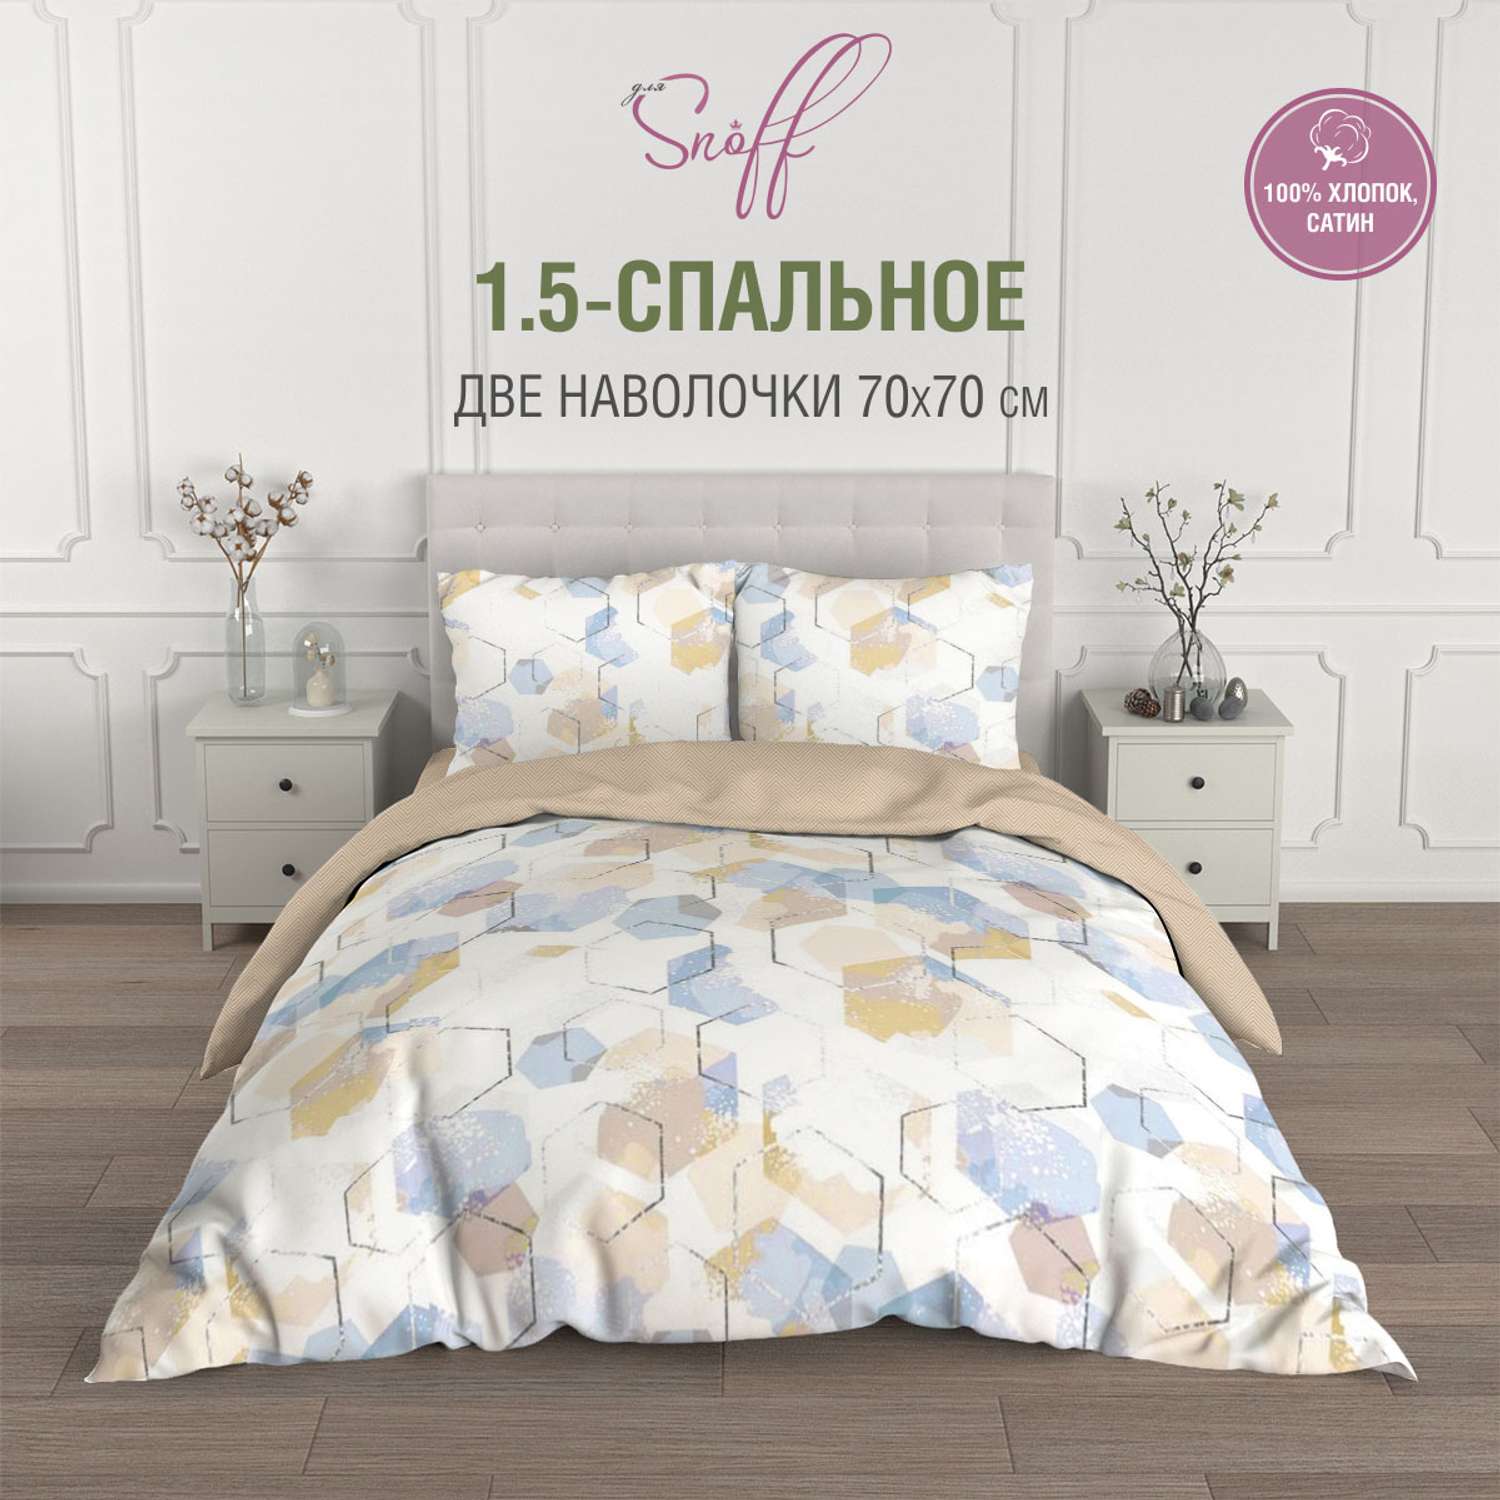 Комплект постельного белья для SNOFF Бэйли 1.5-спальный сатин - фото 1